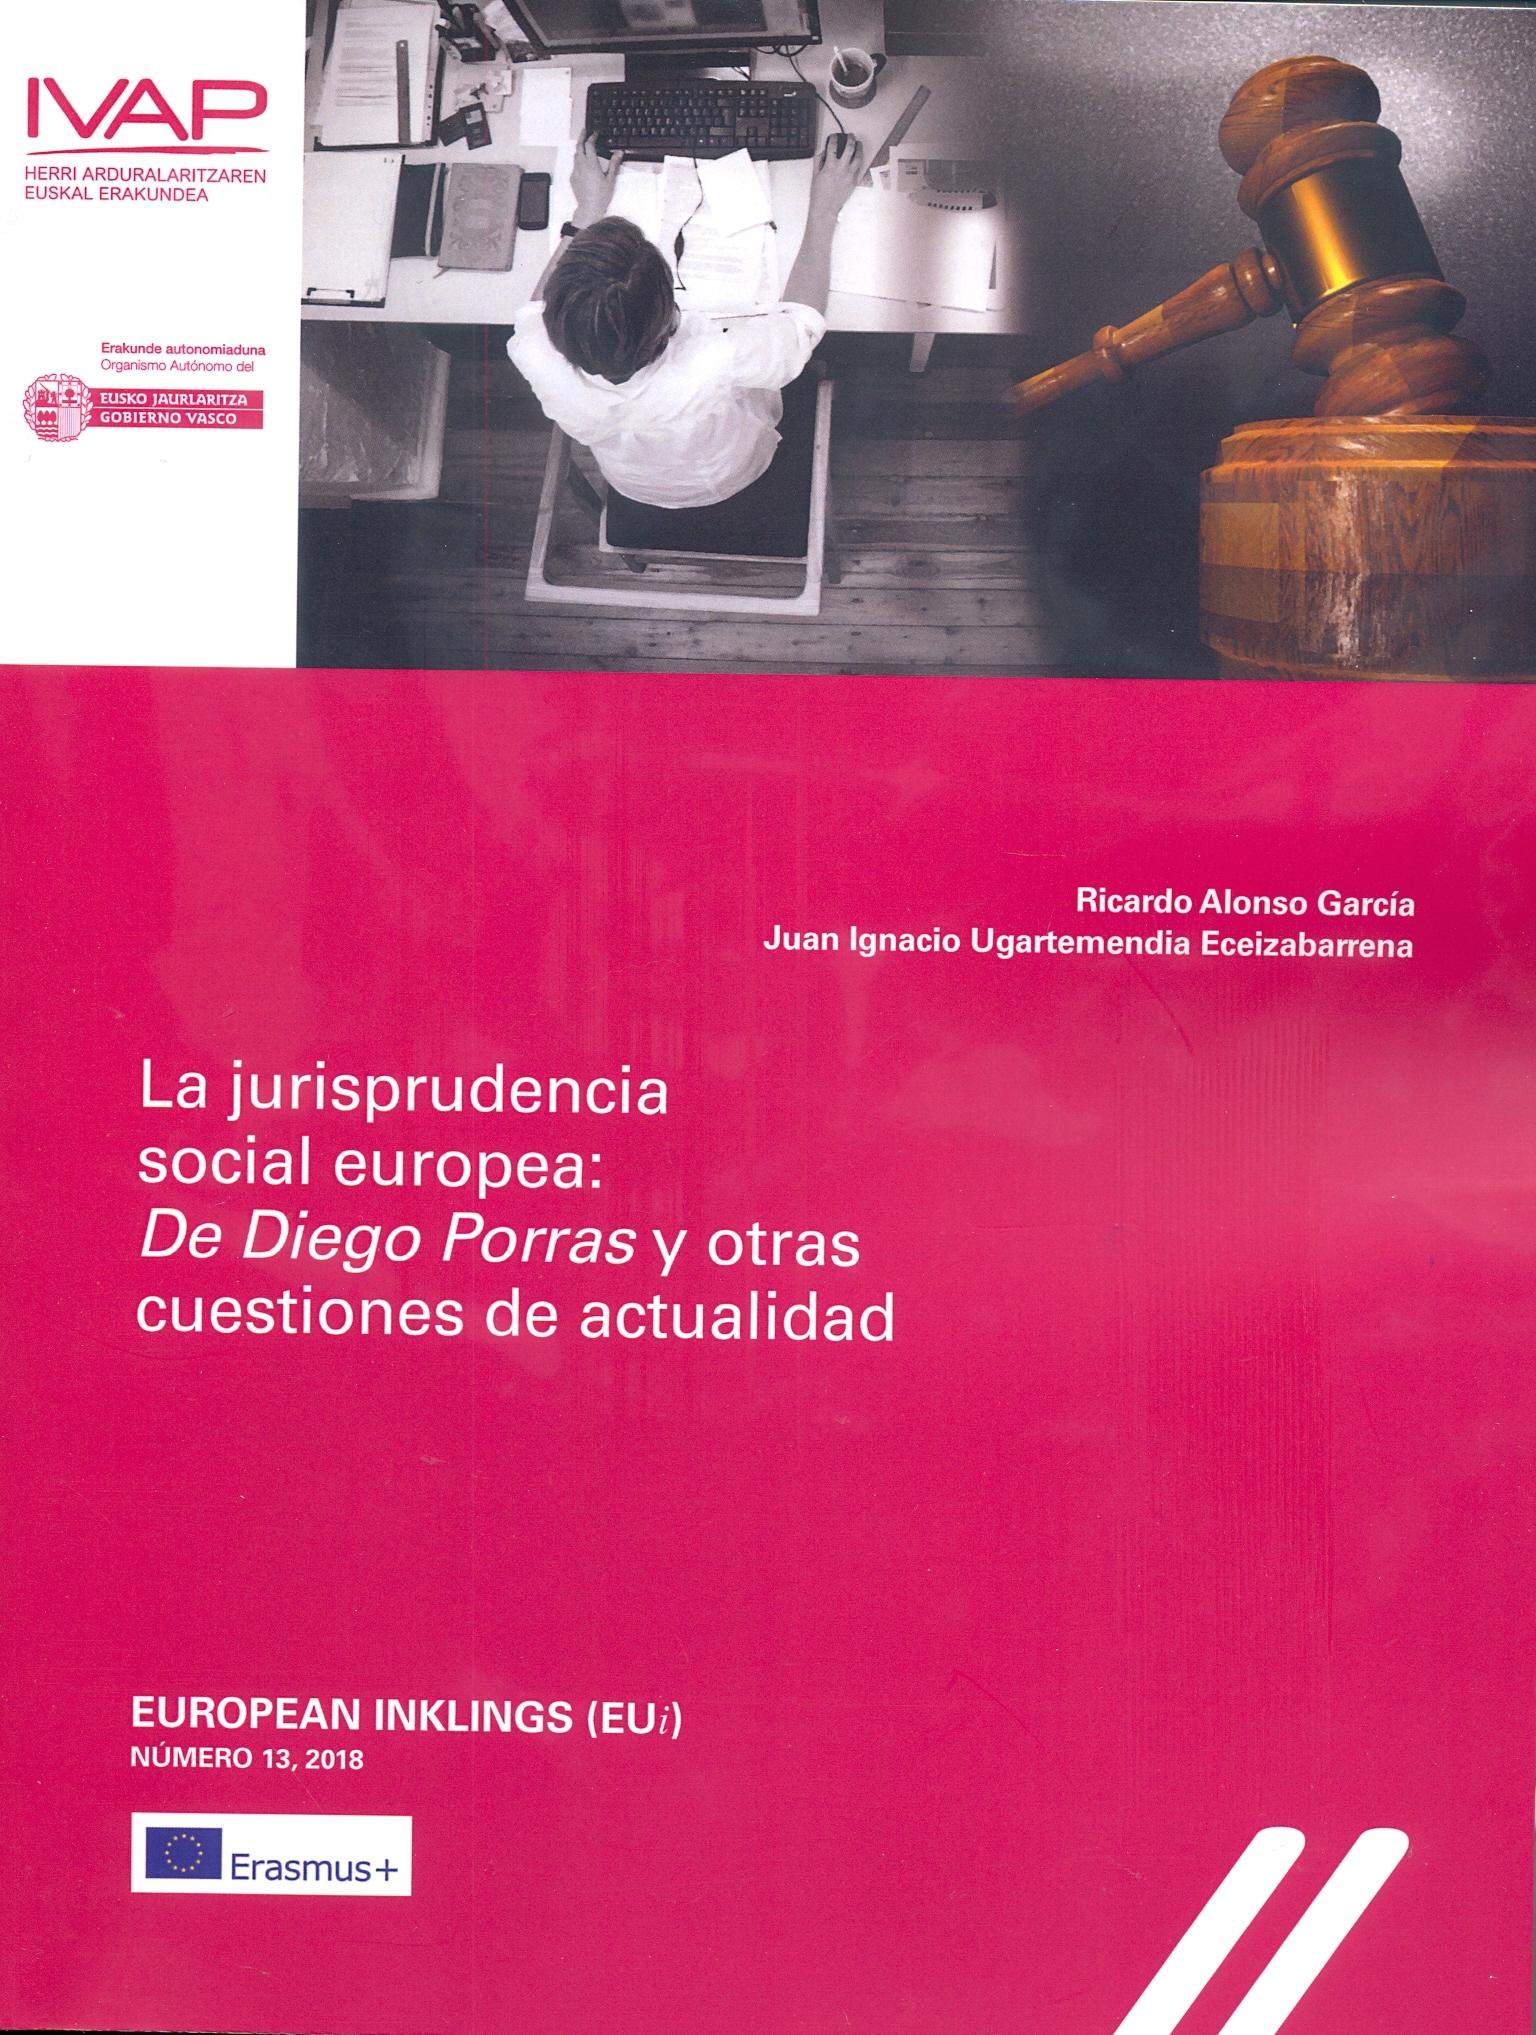 La jurisprudencia social europea: De Diego Porras y otras cuestiones de actualidad